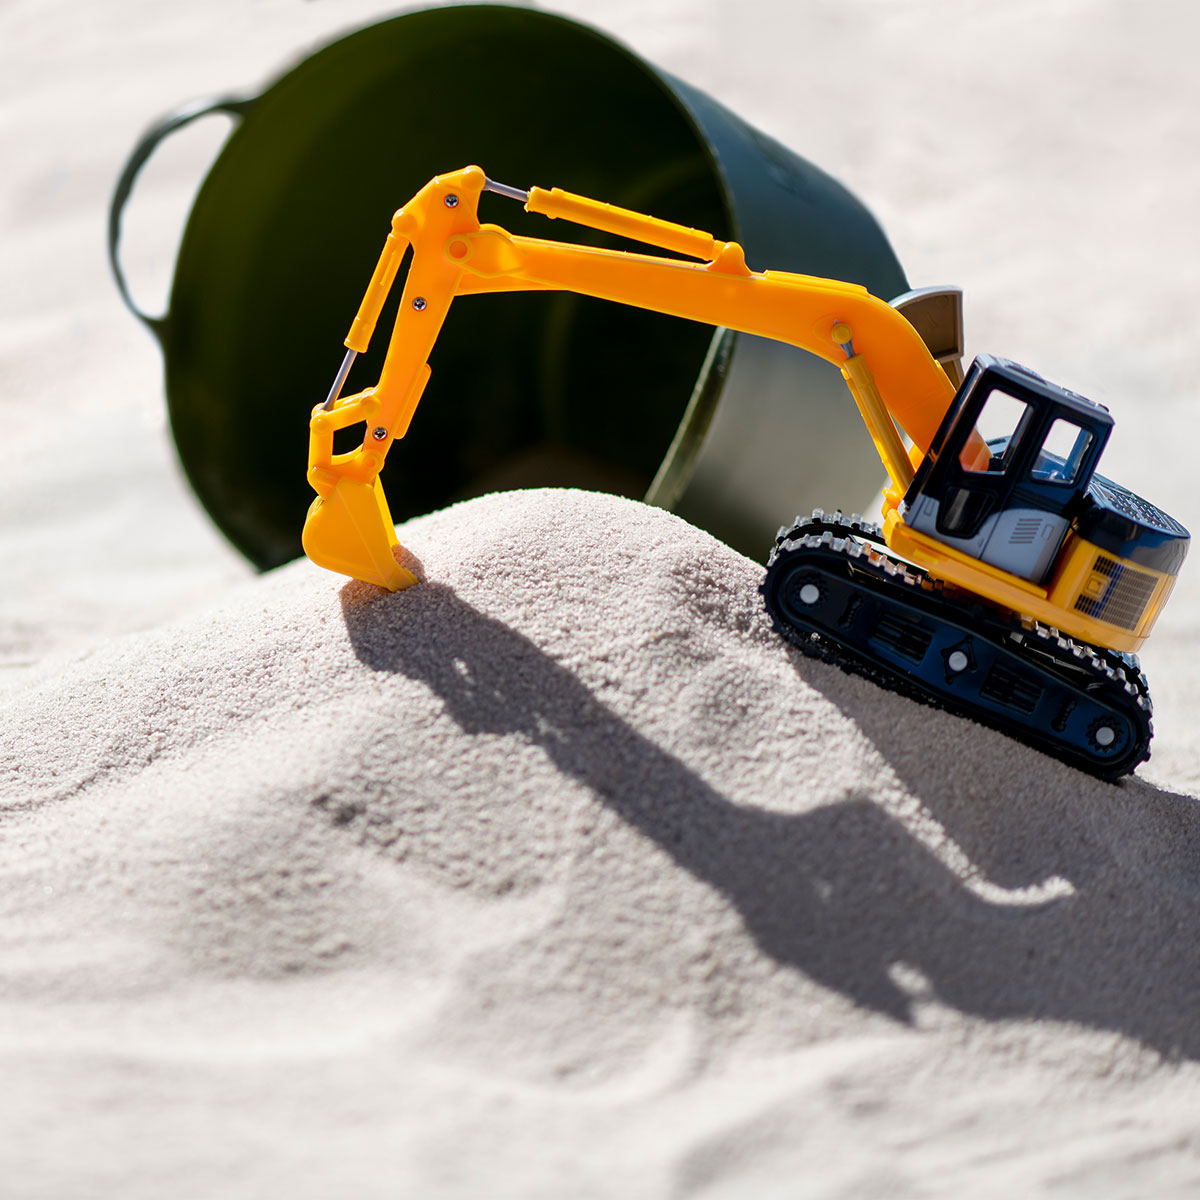 新商品!新型 まるでビーチのようなきめ細かい白い砂 汚れにくいのでベランダや室内の砂遊びに最適です 砂遊び用のさらさら砂の事ならガーデンステージにお任せください 砂 砂遊び 20kg 砂場の砂 ホワイトビーチ遊び砂 1mm 庭遊び すな 砂場用砂 細かい きれい 遊び砂 さらさらの砂 砂場遊び ビーチ 海 砂浜 庭 砂場 子ども 幼児 白砂 ホワイトサンド 白い砂 幼稚園 保育園 子供 お祝い 屋外 乾燥 tepsa.com.pe